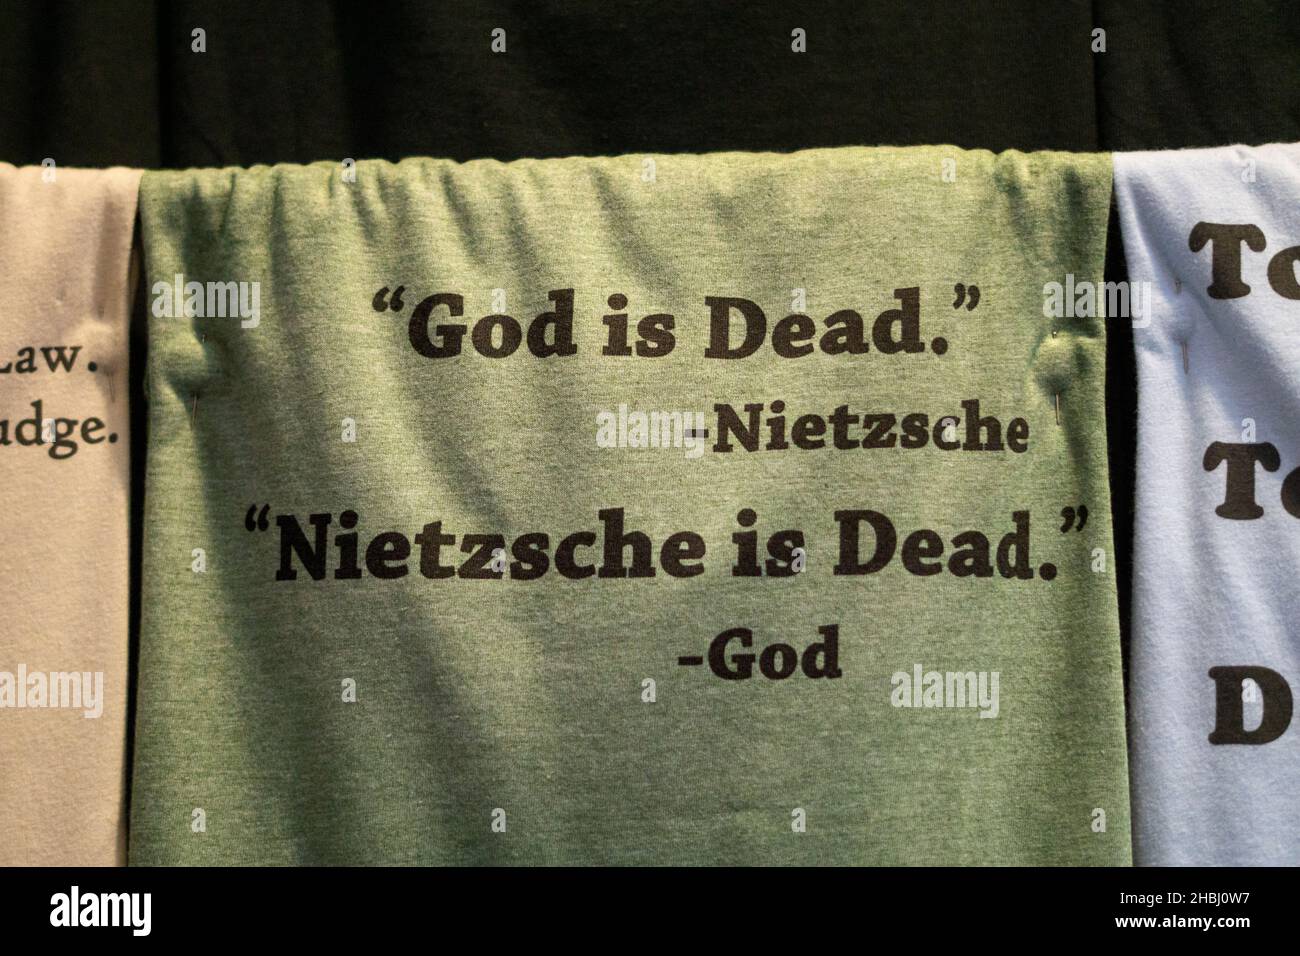 RACHE DES GOTTES. Ein Witz über die berühmte Aussage des Philosophen Friedrich Nietzsche, dass Gott tot ist. In einem Geschäft in Pittsburgh, Pennsylvania. Stockfoto